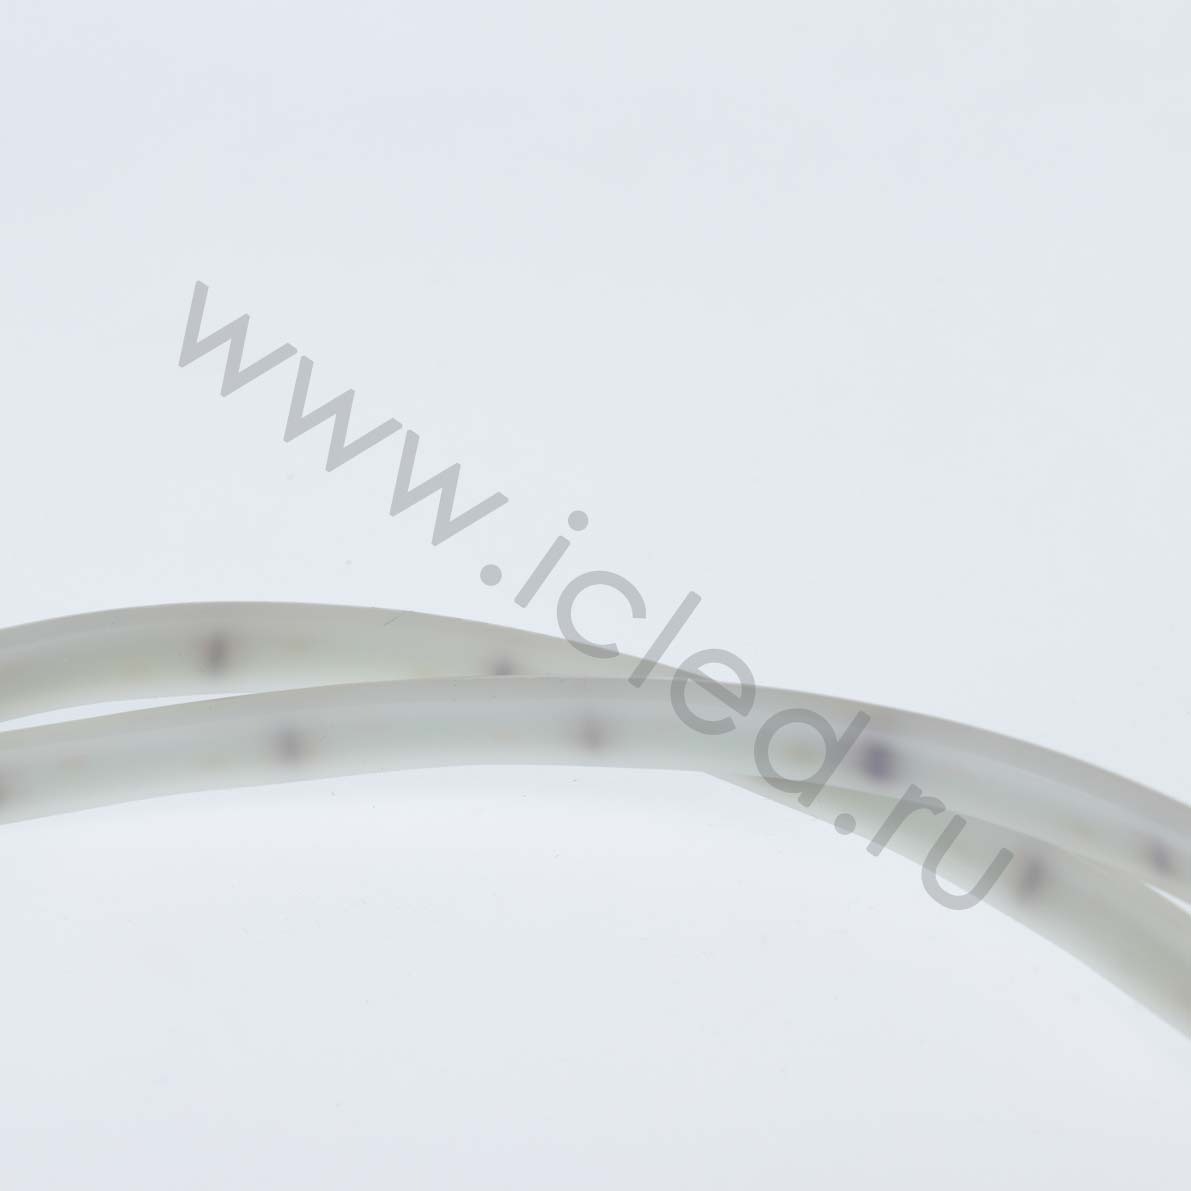 Влагозащищенные светодиодные ленты Светодиодная лента Standart Pro class 2835 120led/m, warm white, 12V, IP68, N333 Icled